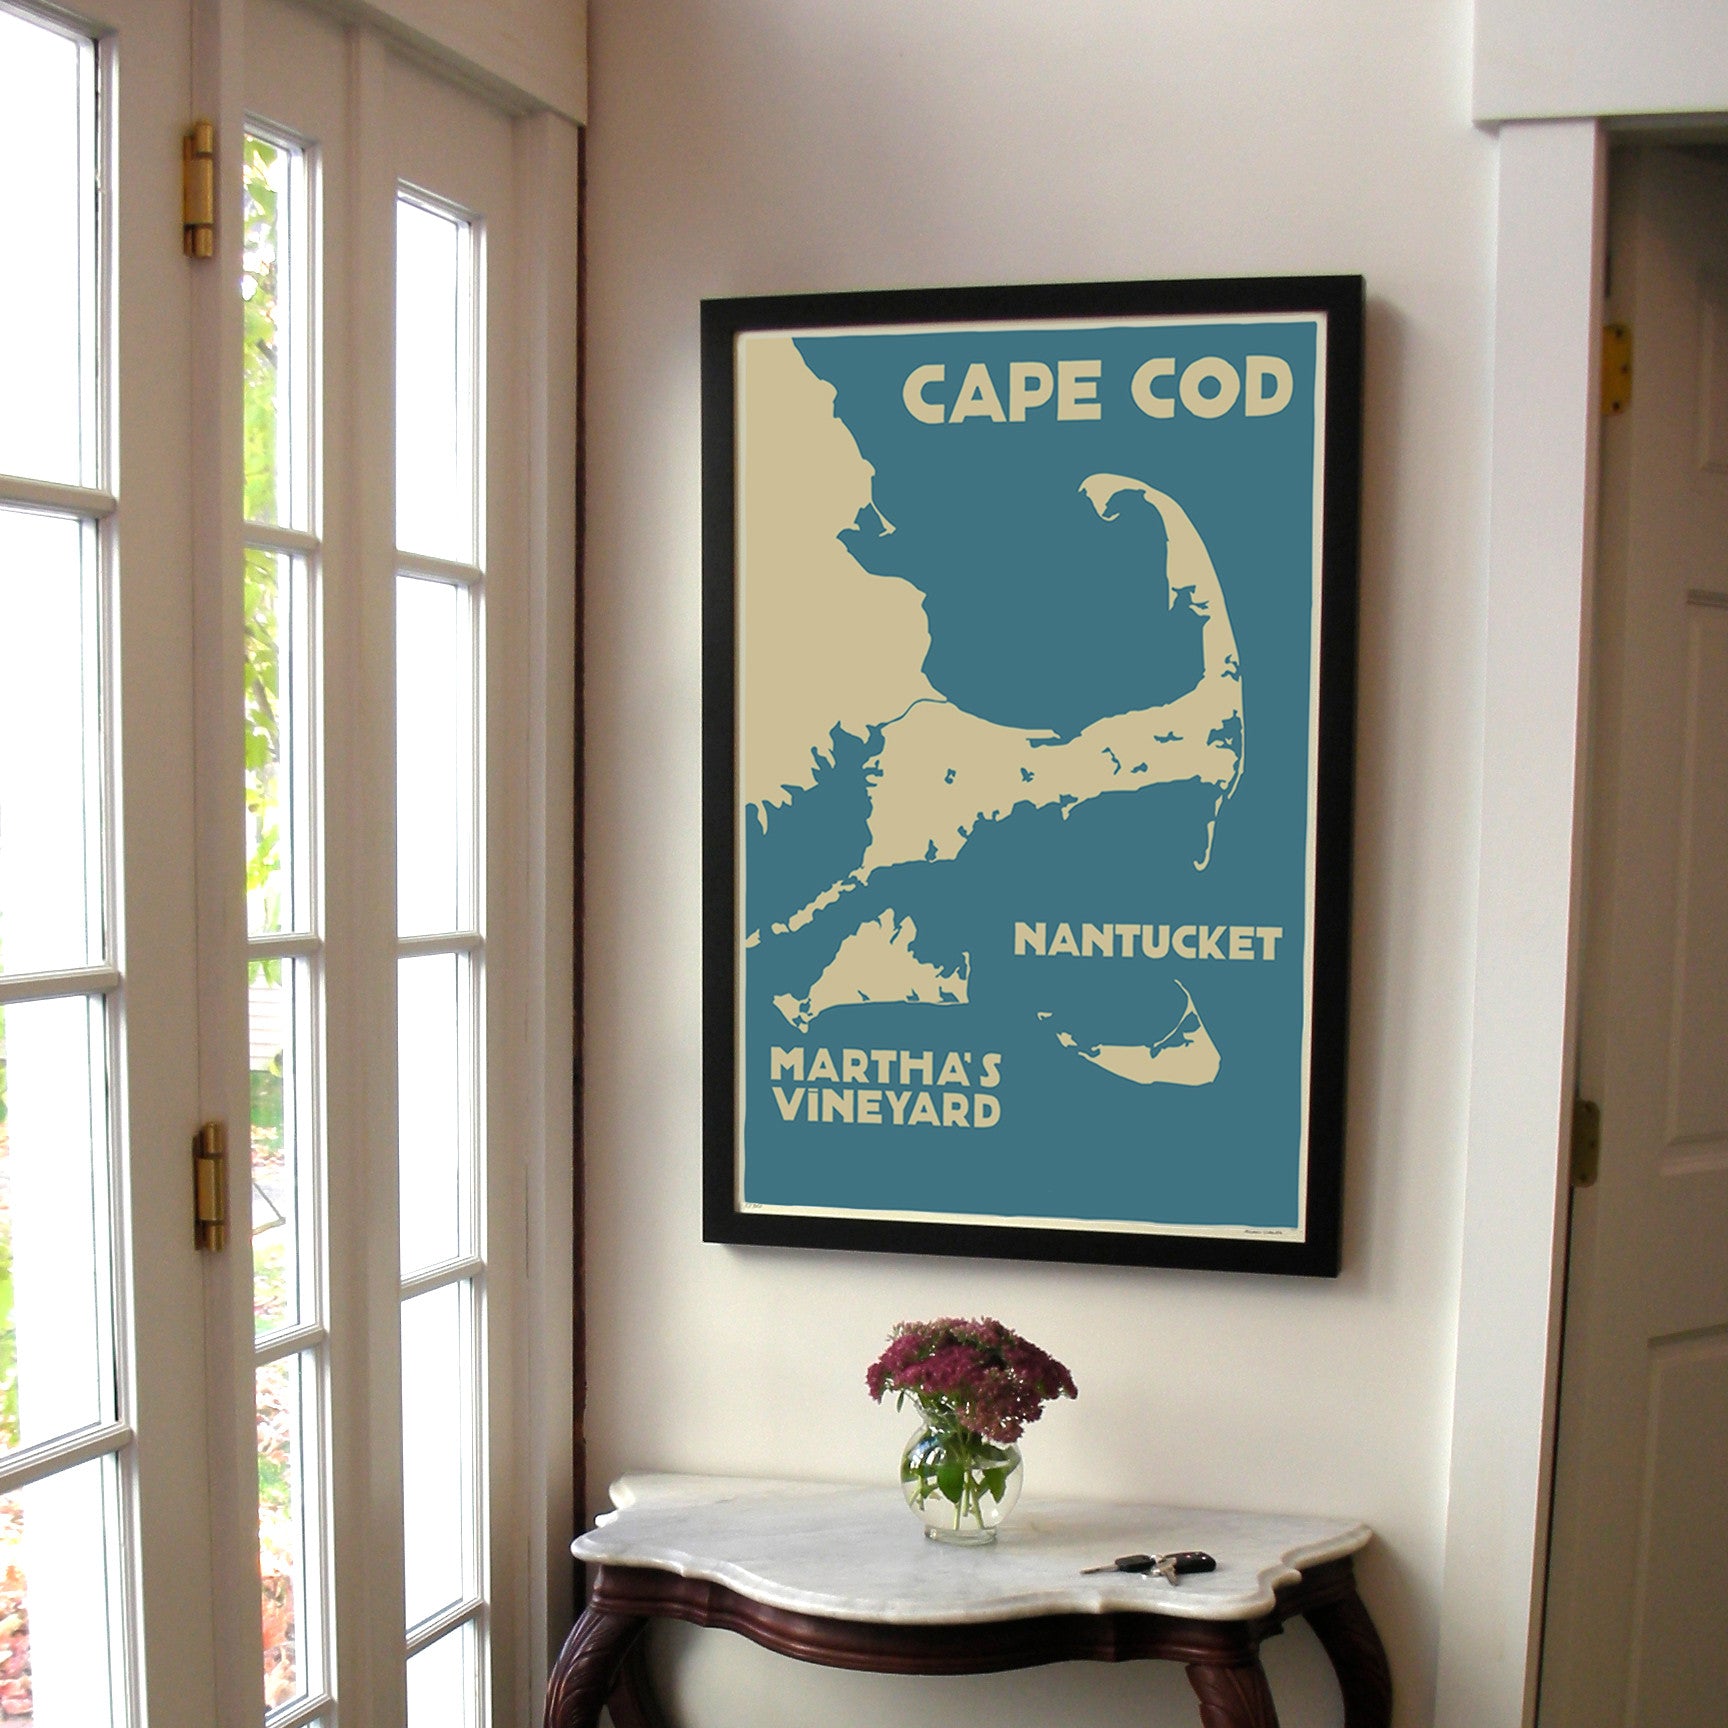 Cape Cod, Martha's Vineyard, Nantucket Map Art Print 24" x 36" Framed Travel Poster By Alan Claude  - Massachusetts